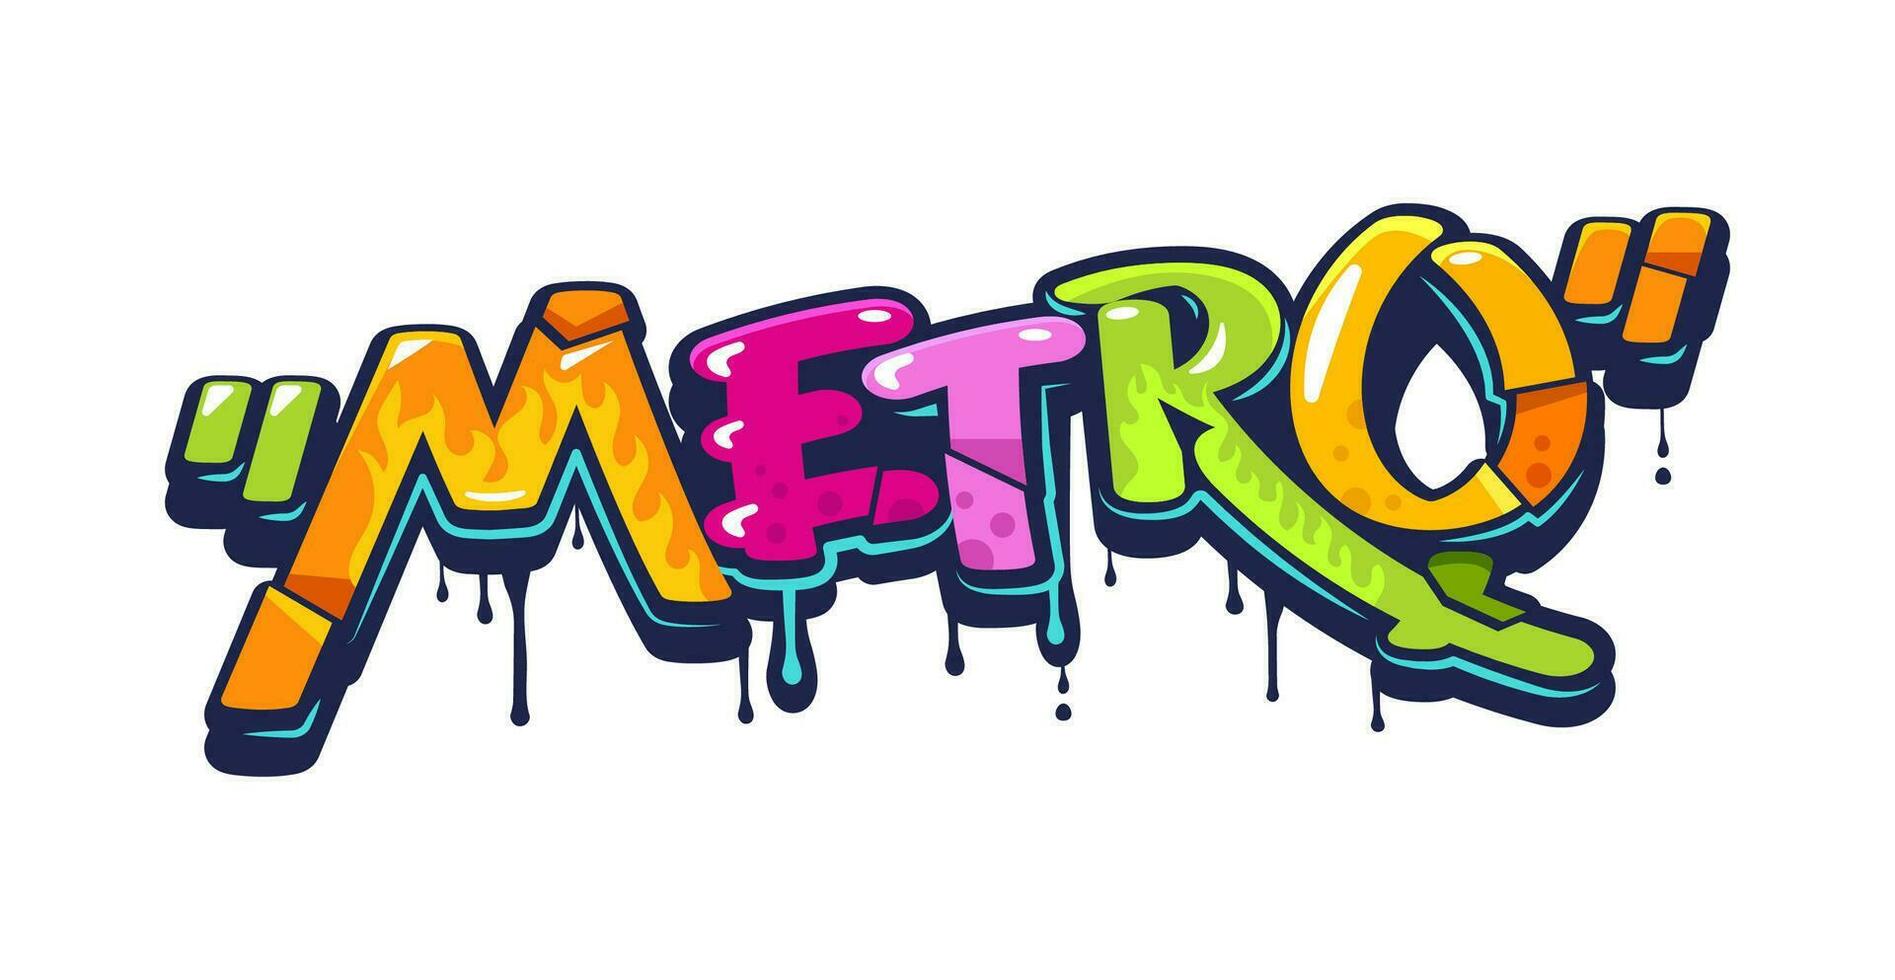 ondergronds metro metro graffiti stedelijk straat kunst vector